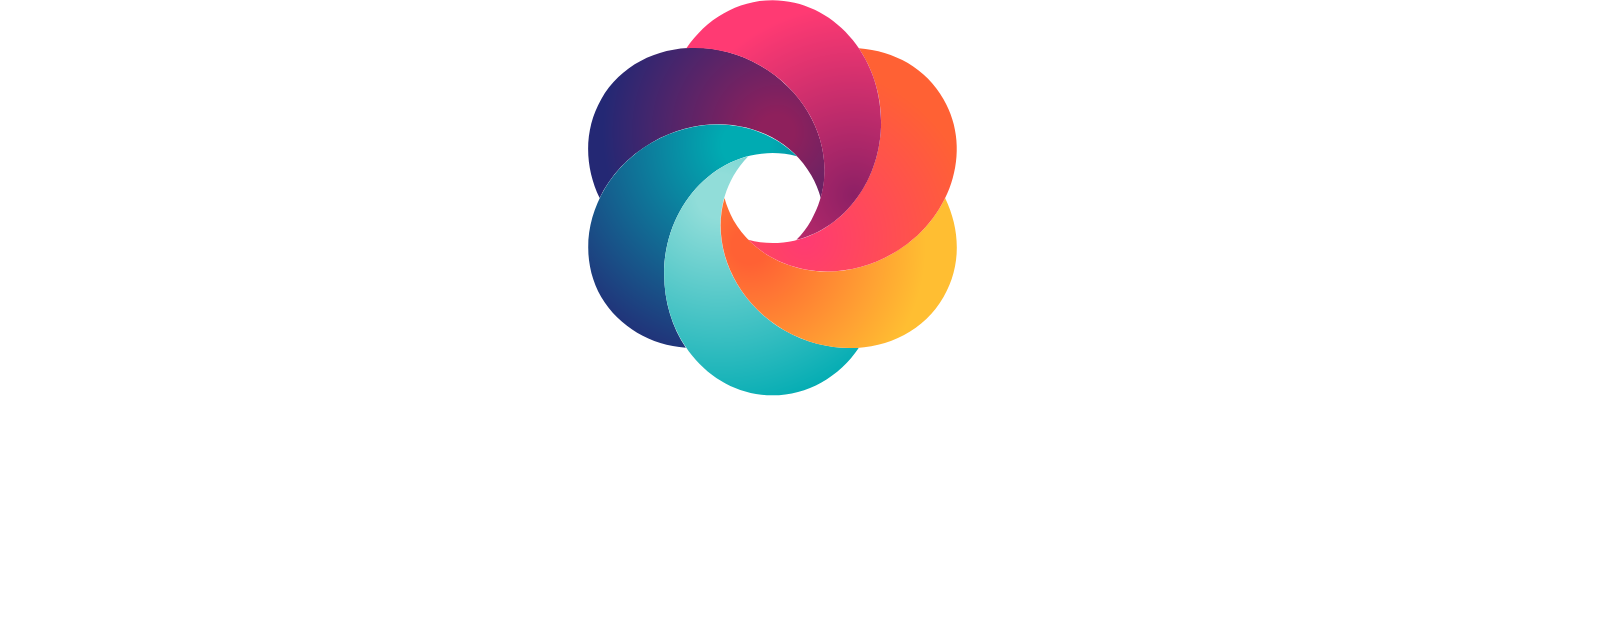 Option Care Health logo large for dark backgrounds (transparent PNG)